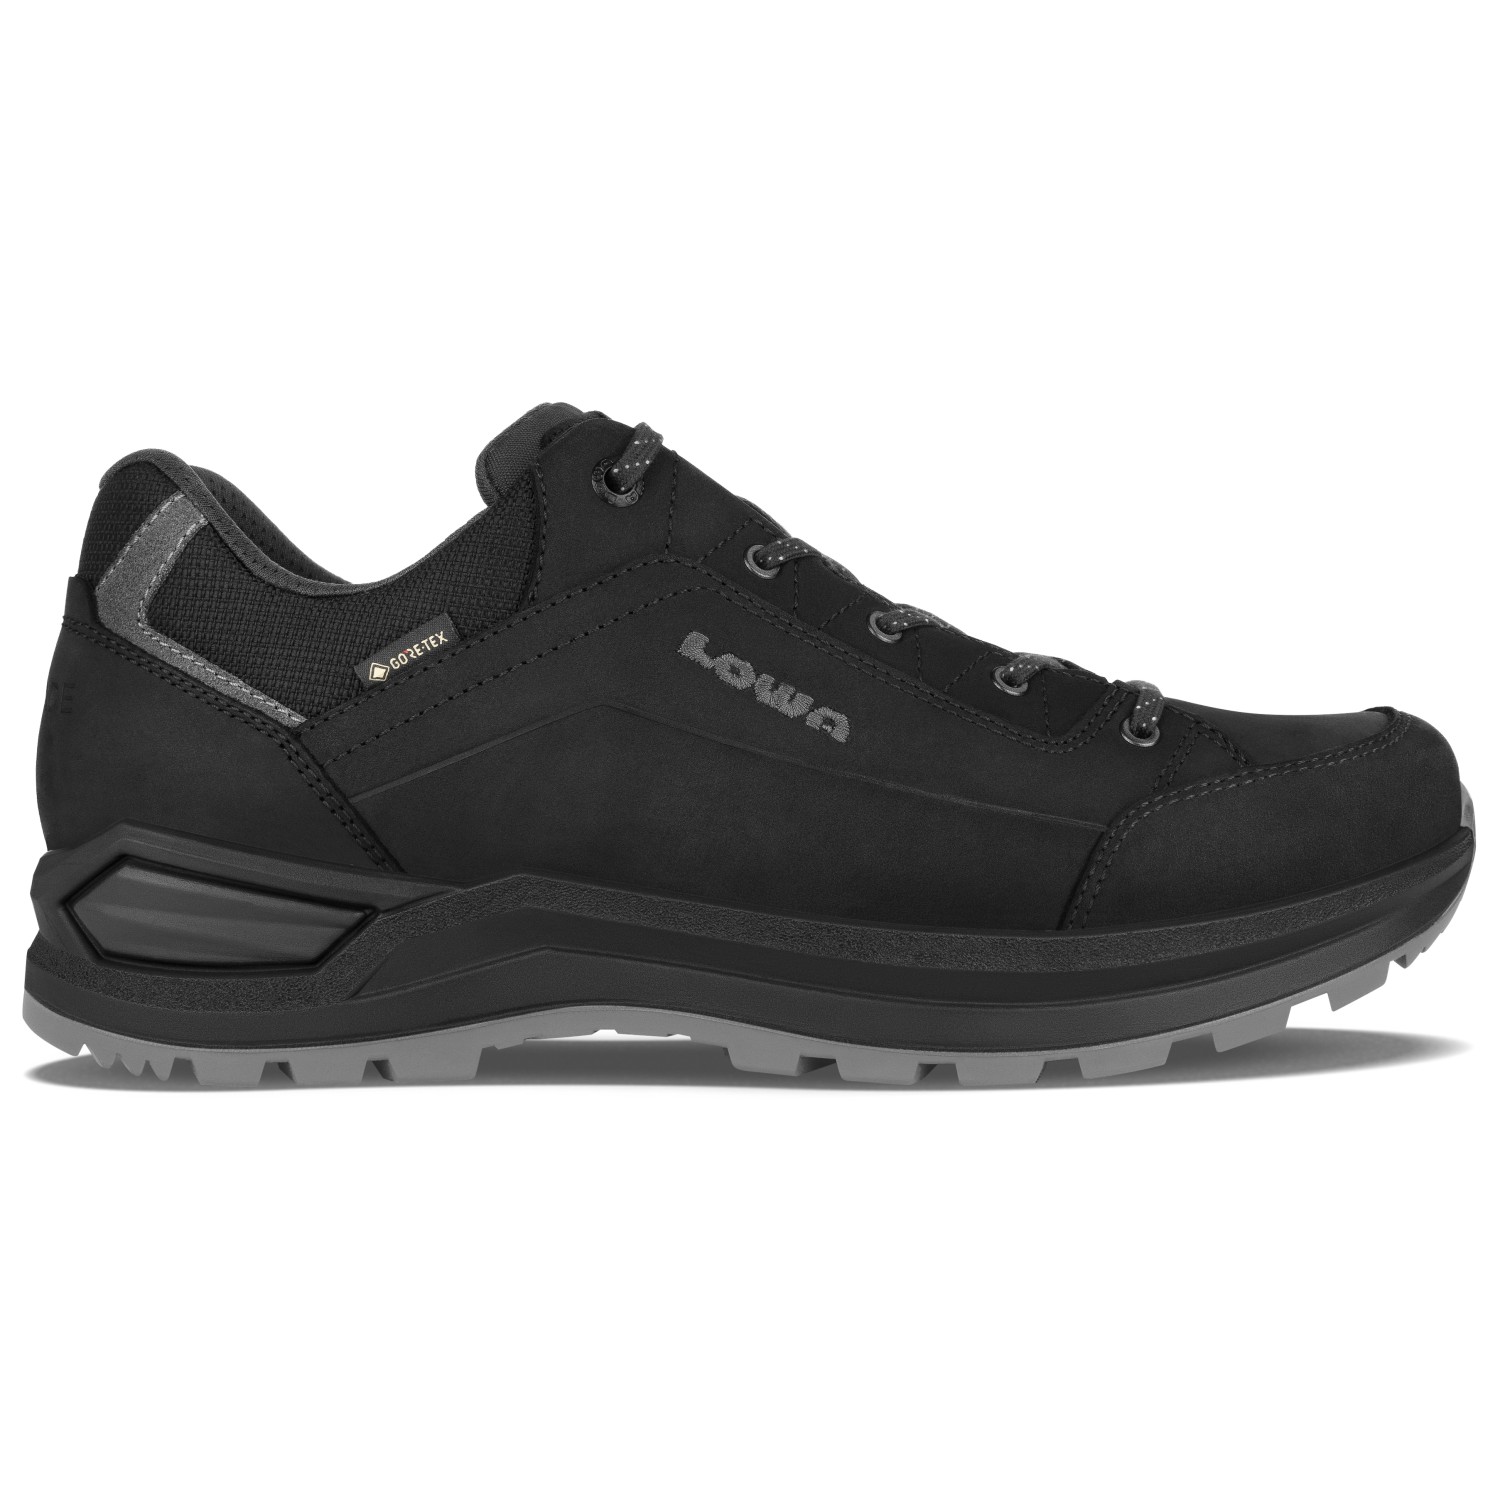 Мультиспортивная обувь Lowa Renegade Evo GTX Lo, цвет Black/Graphite